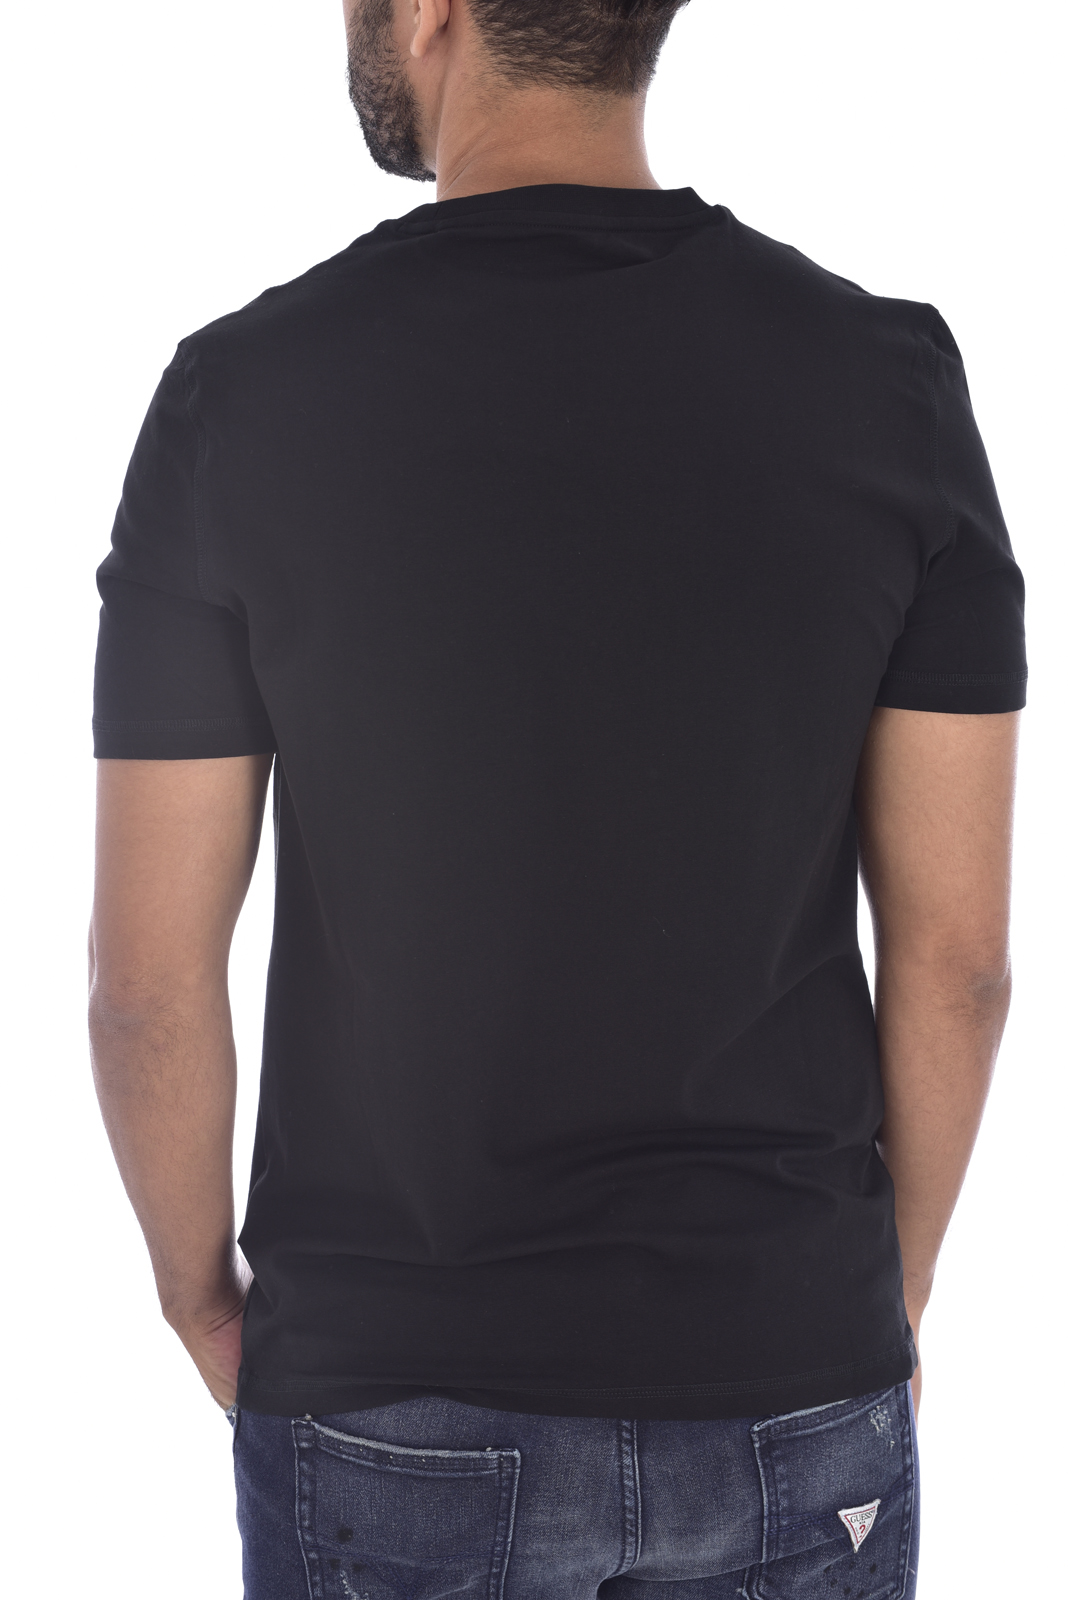 Tee-shirt noir slim manches courtes M1bi35 - Guess